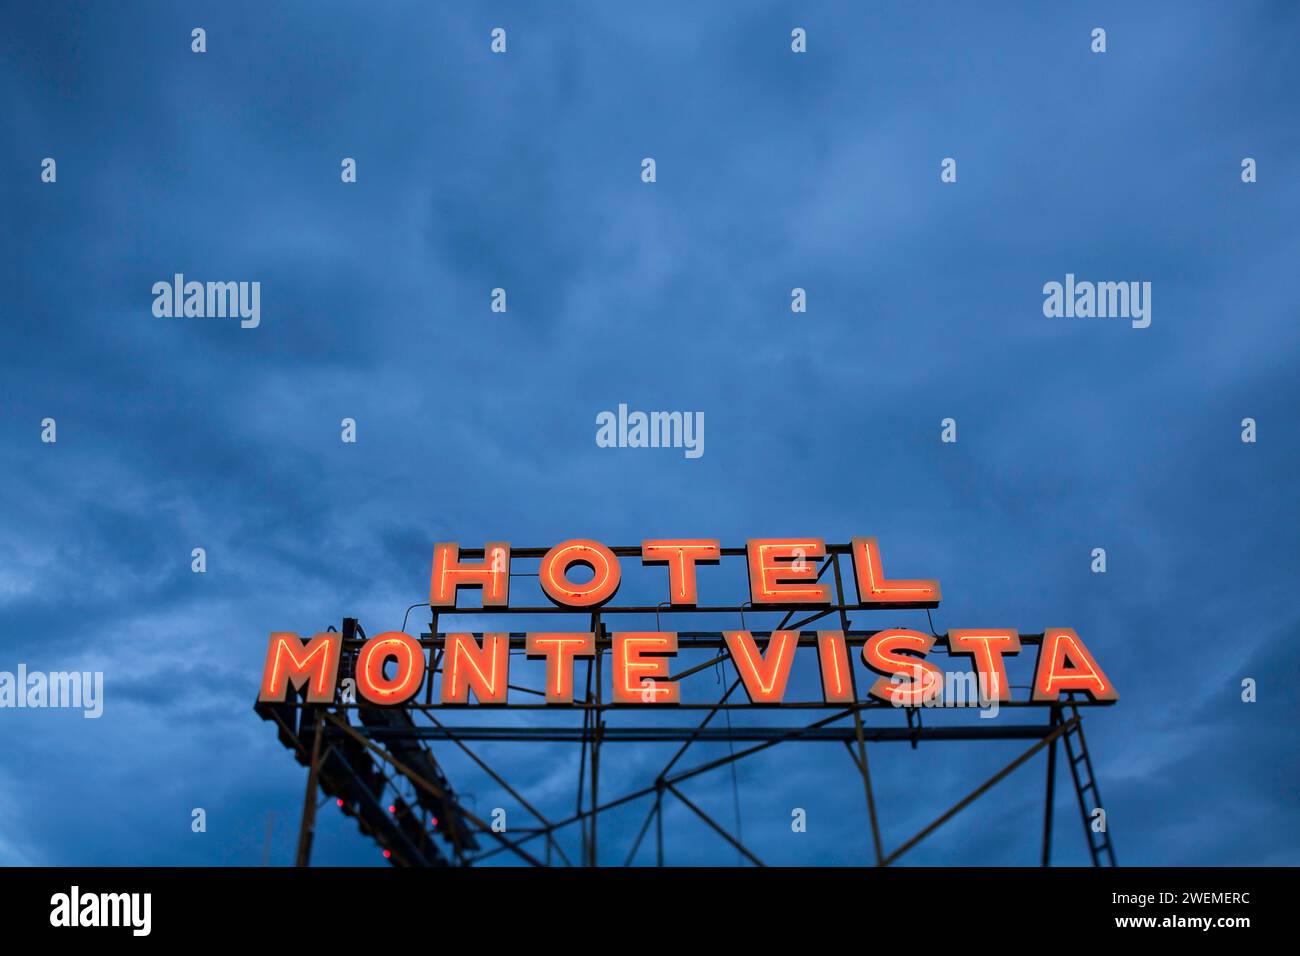 Letrero neón del hotel Monte Vista iluminado con fondo de cielo azul mohoso Foto de stock